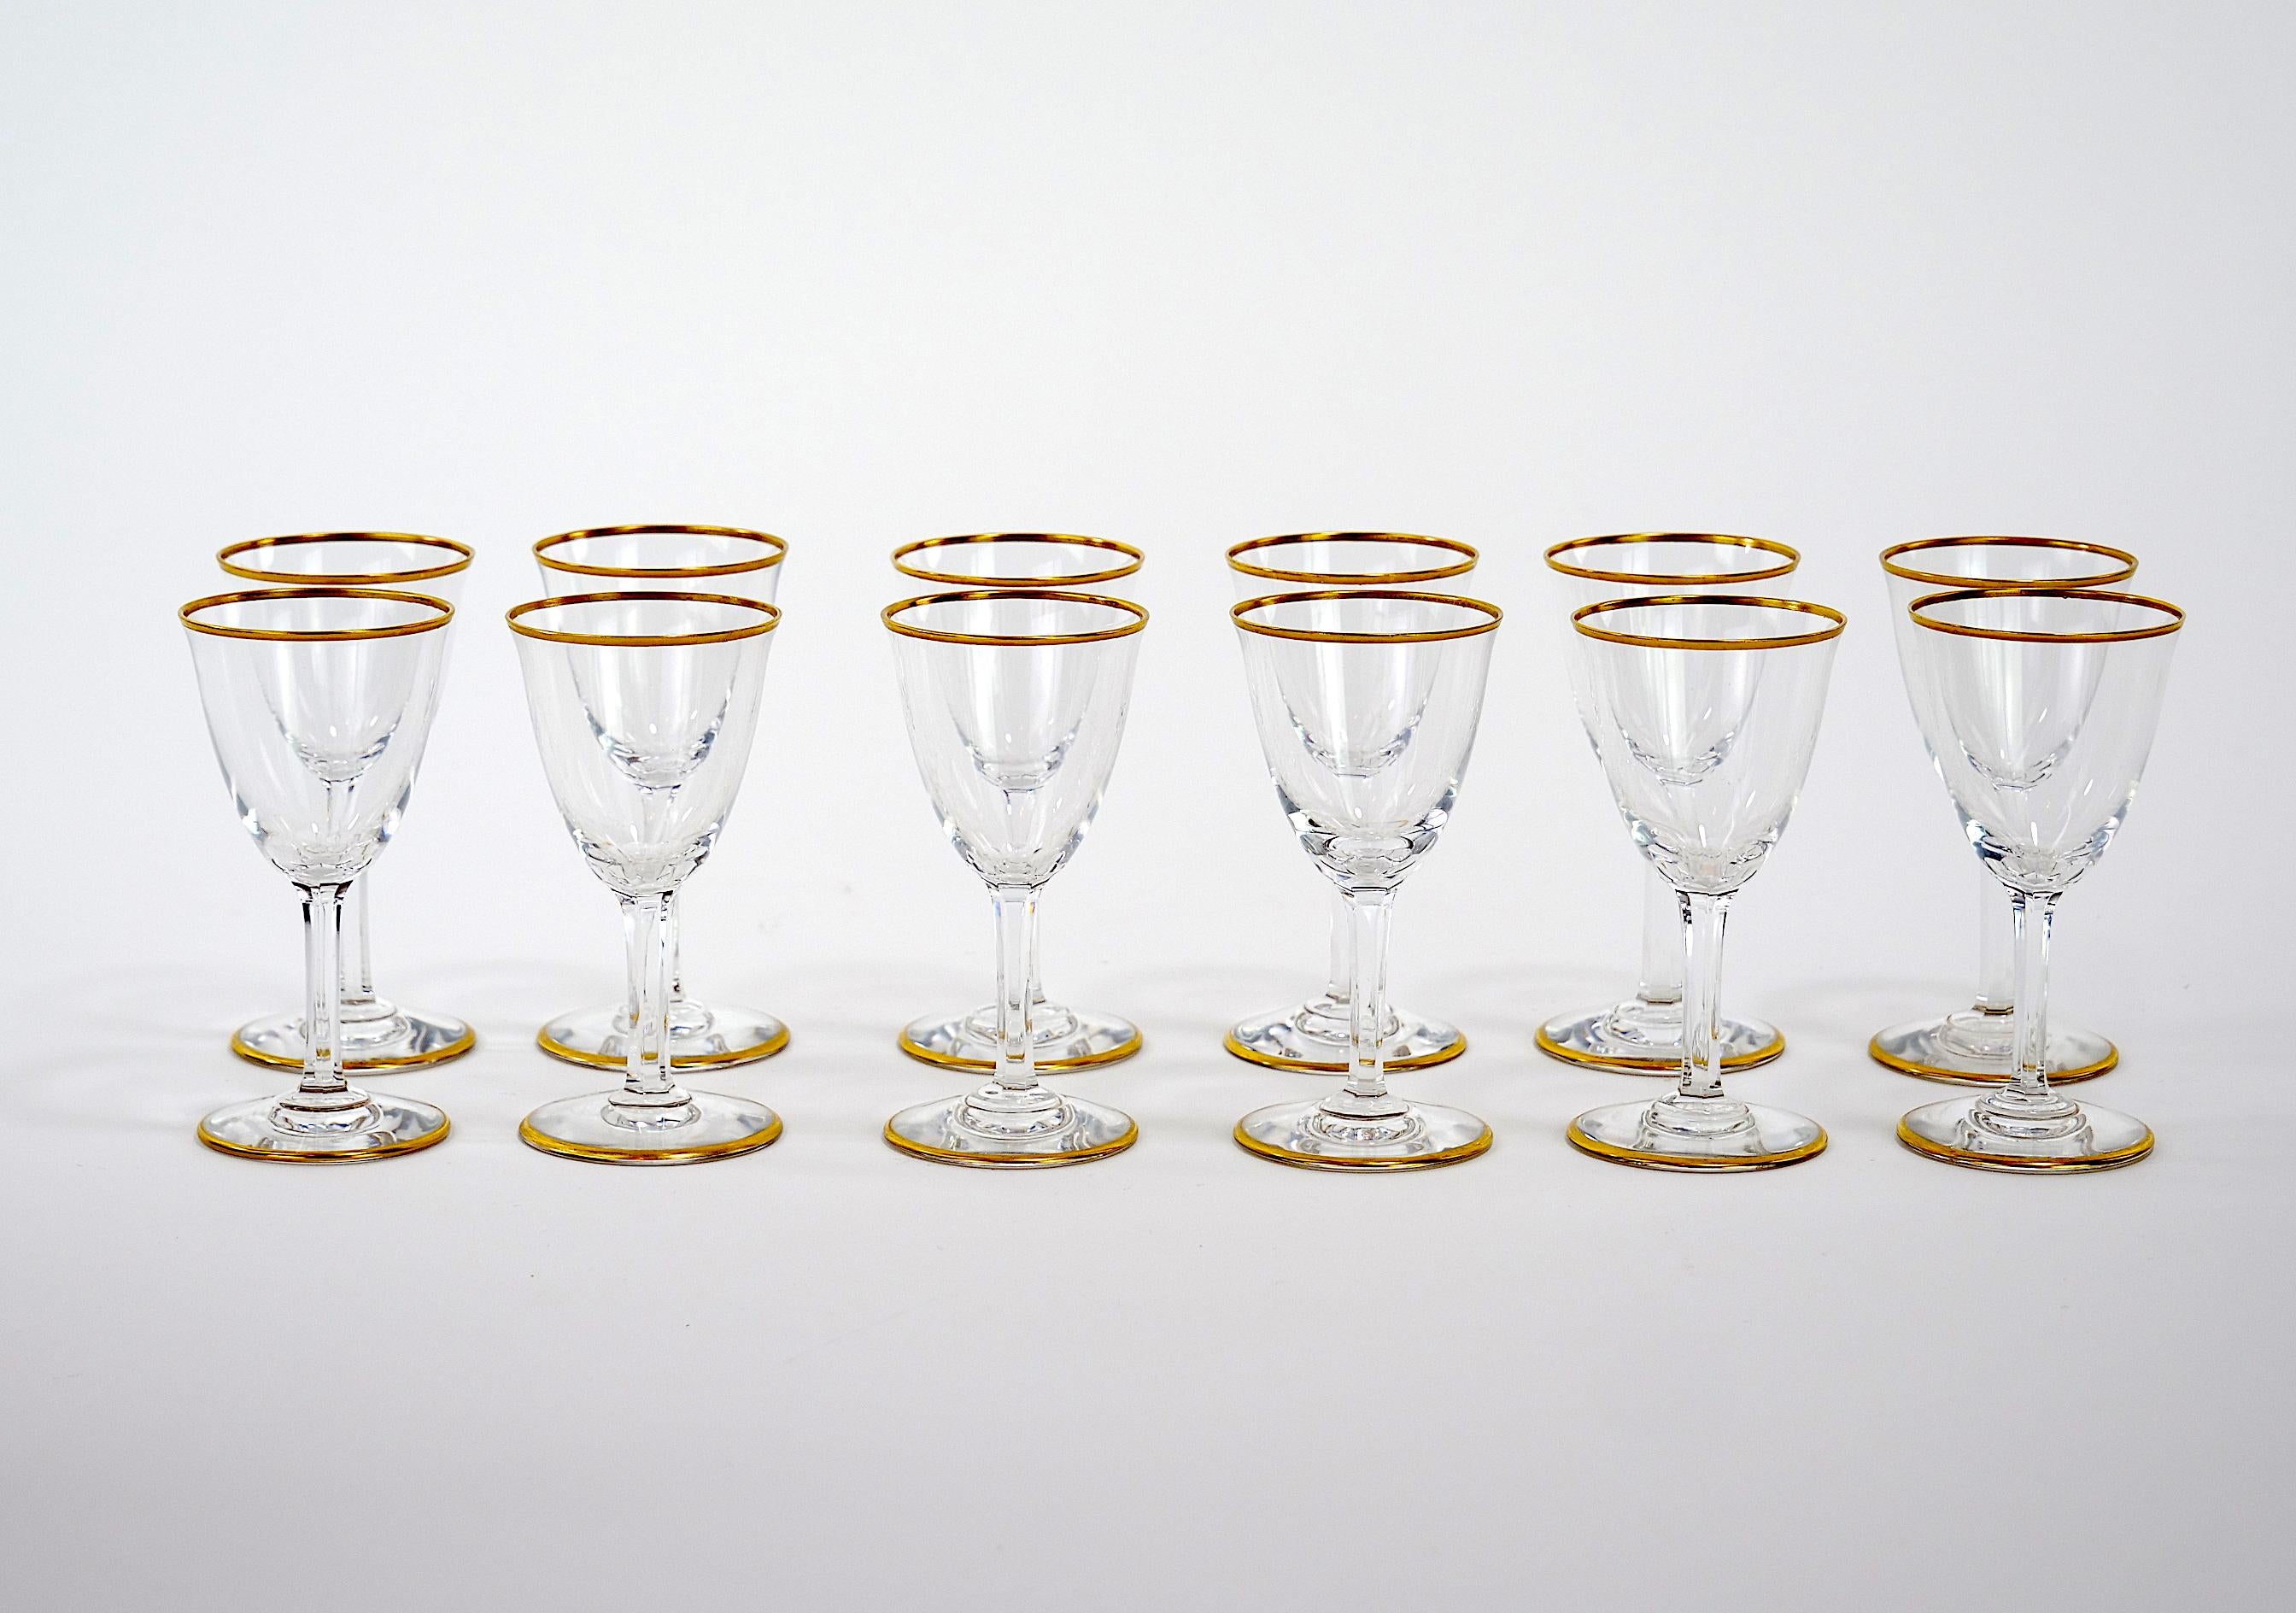 
Magnifiquement sculpté à la main et garni d'or doré, ce service de table en cristal de Baccarat peut accueillir douze personnes. Chaque verre est en excellent état. La marque du fabricant est gravée en dessous. Usure mineure. Chaque verre mesure 3